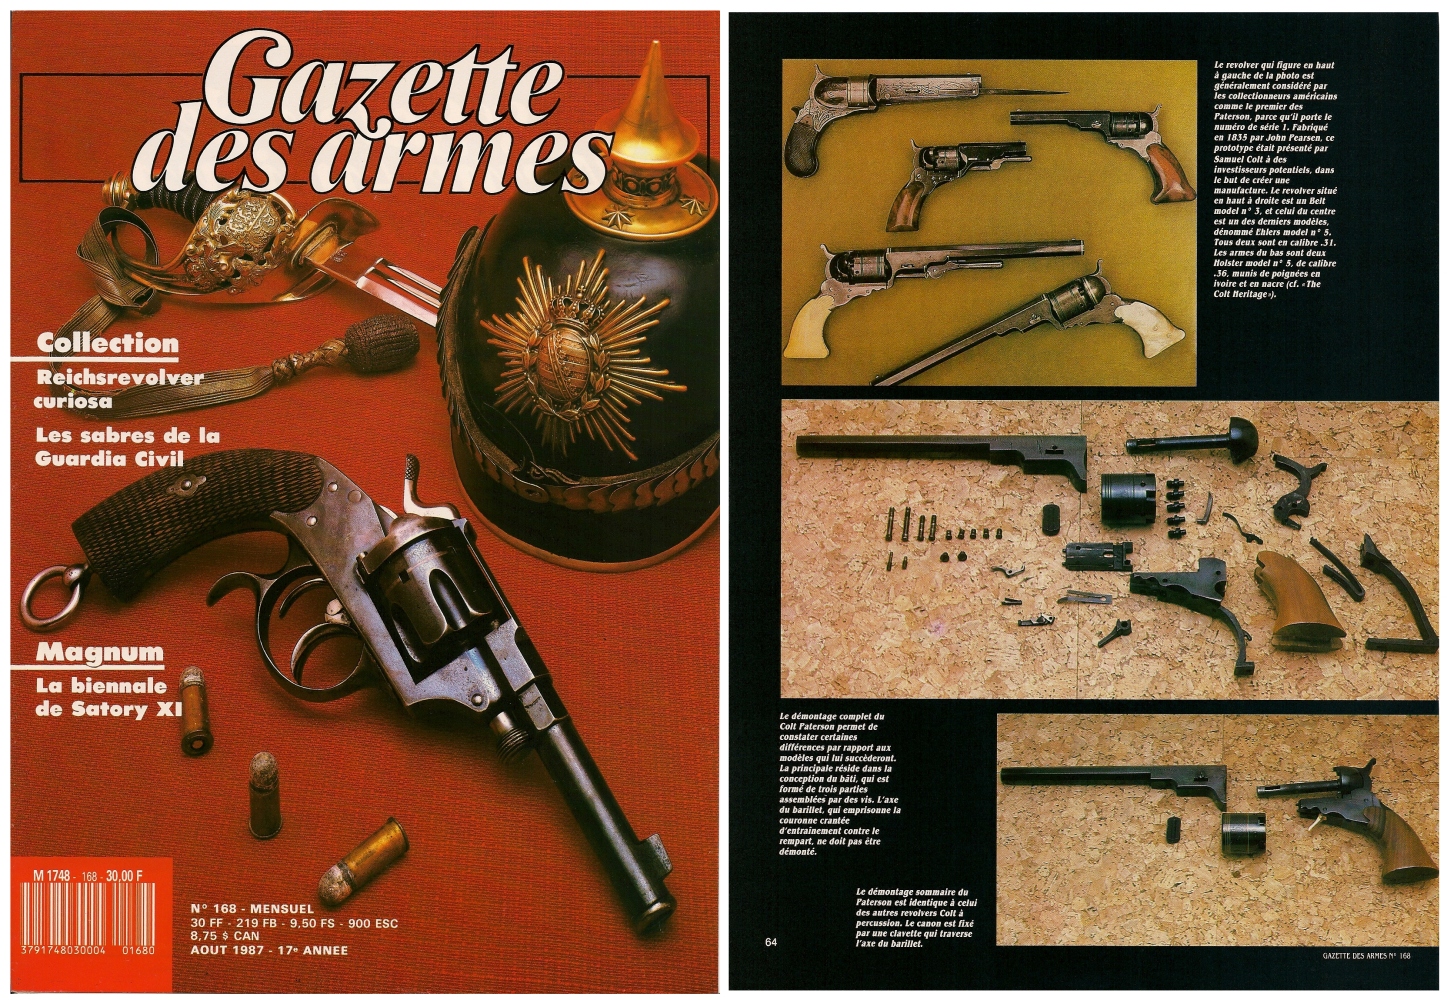 Le banc d’essai des répliques du Colt Paterson a été publié sur 8 pages dans le magazine Gazette des Armes n°168 (août 1987)